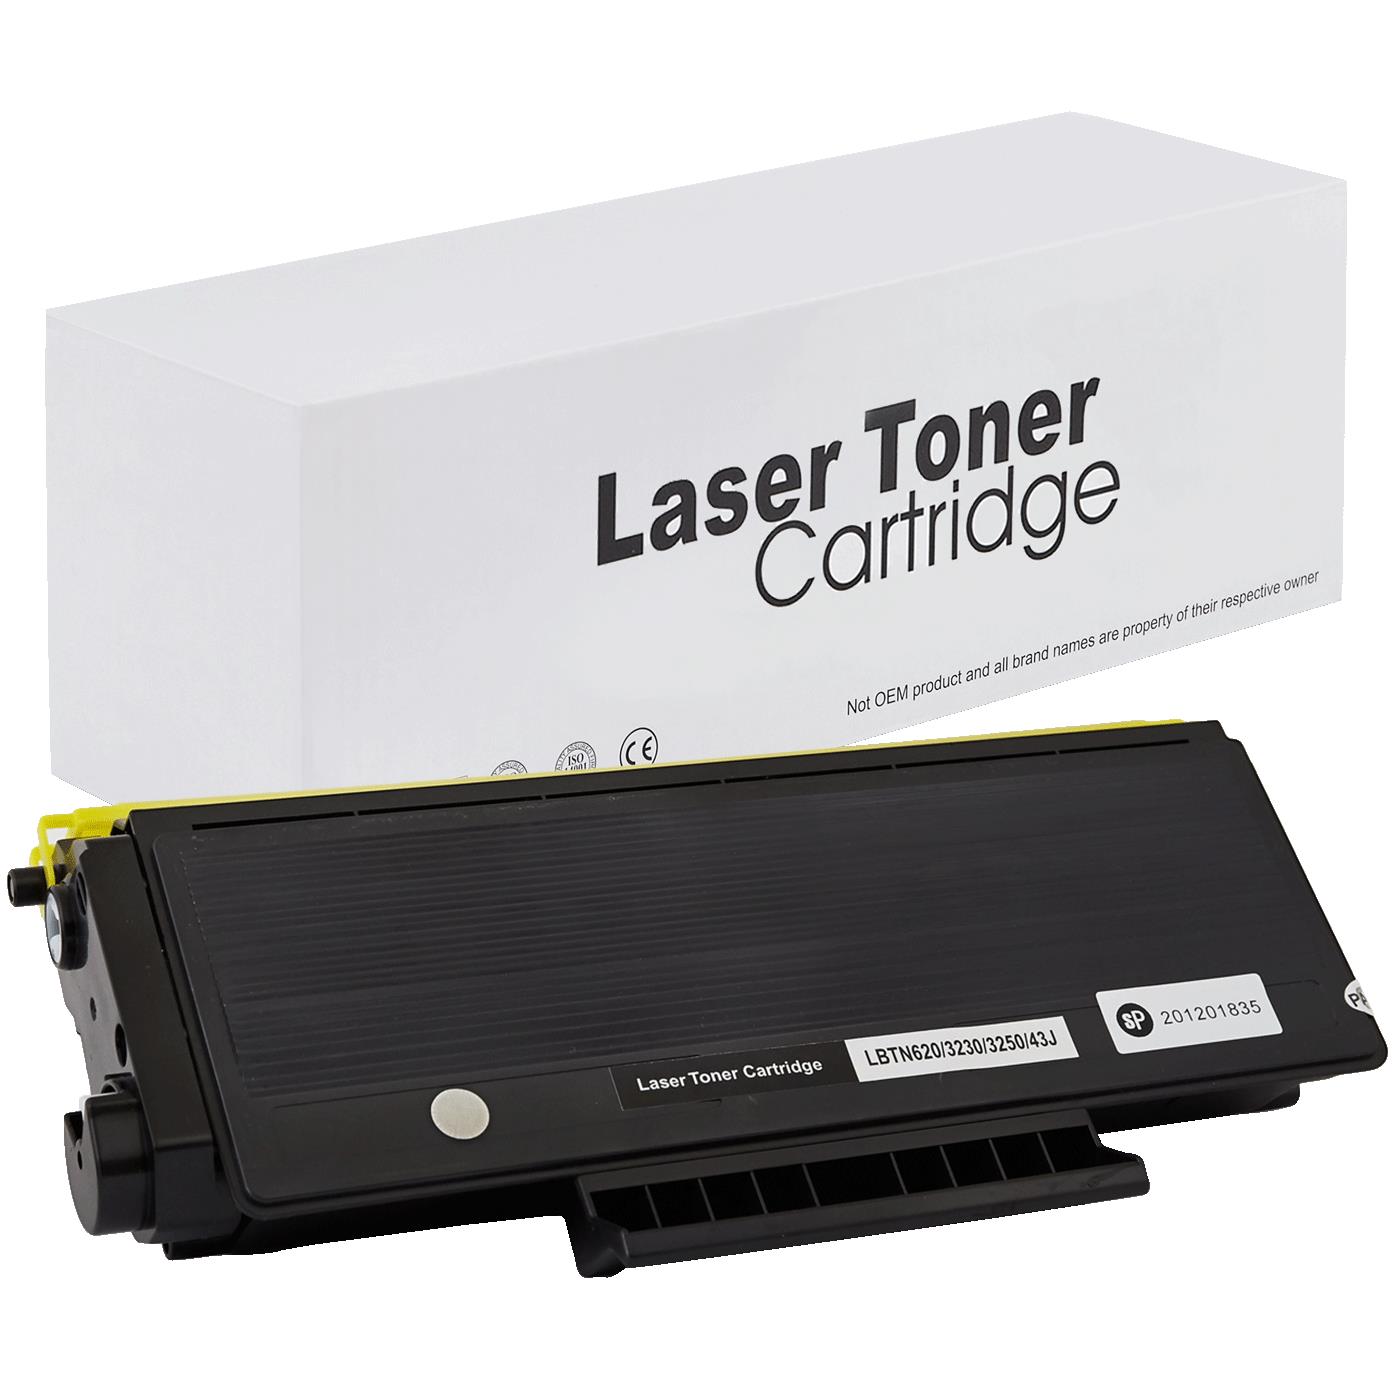 съвместима тонер касета за принтери и печатащи устройства на Brother MFC 8890 DW Toner BR-3230 | TN3230. Ниски цени, прецизно изпълнение, високо качество.